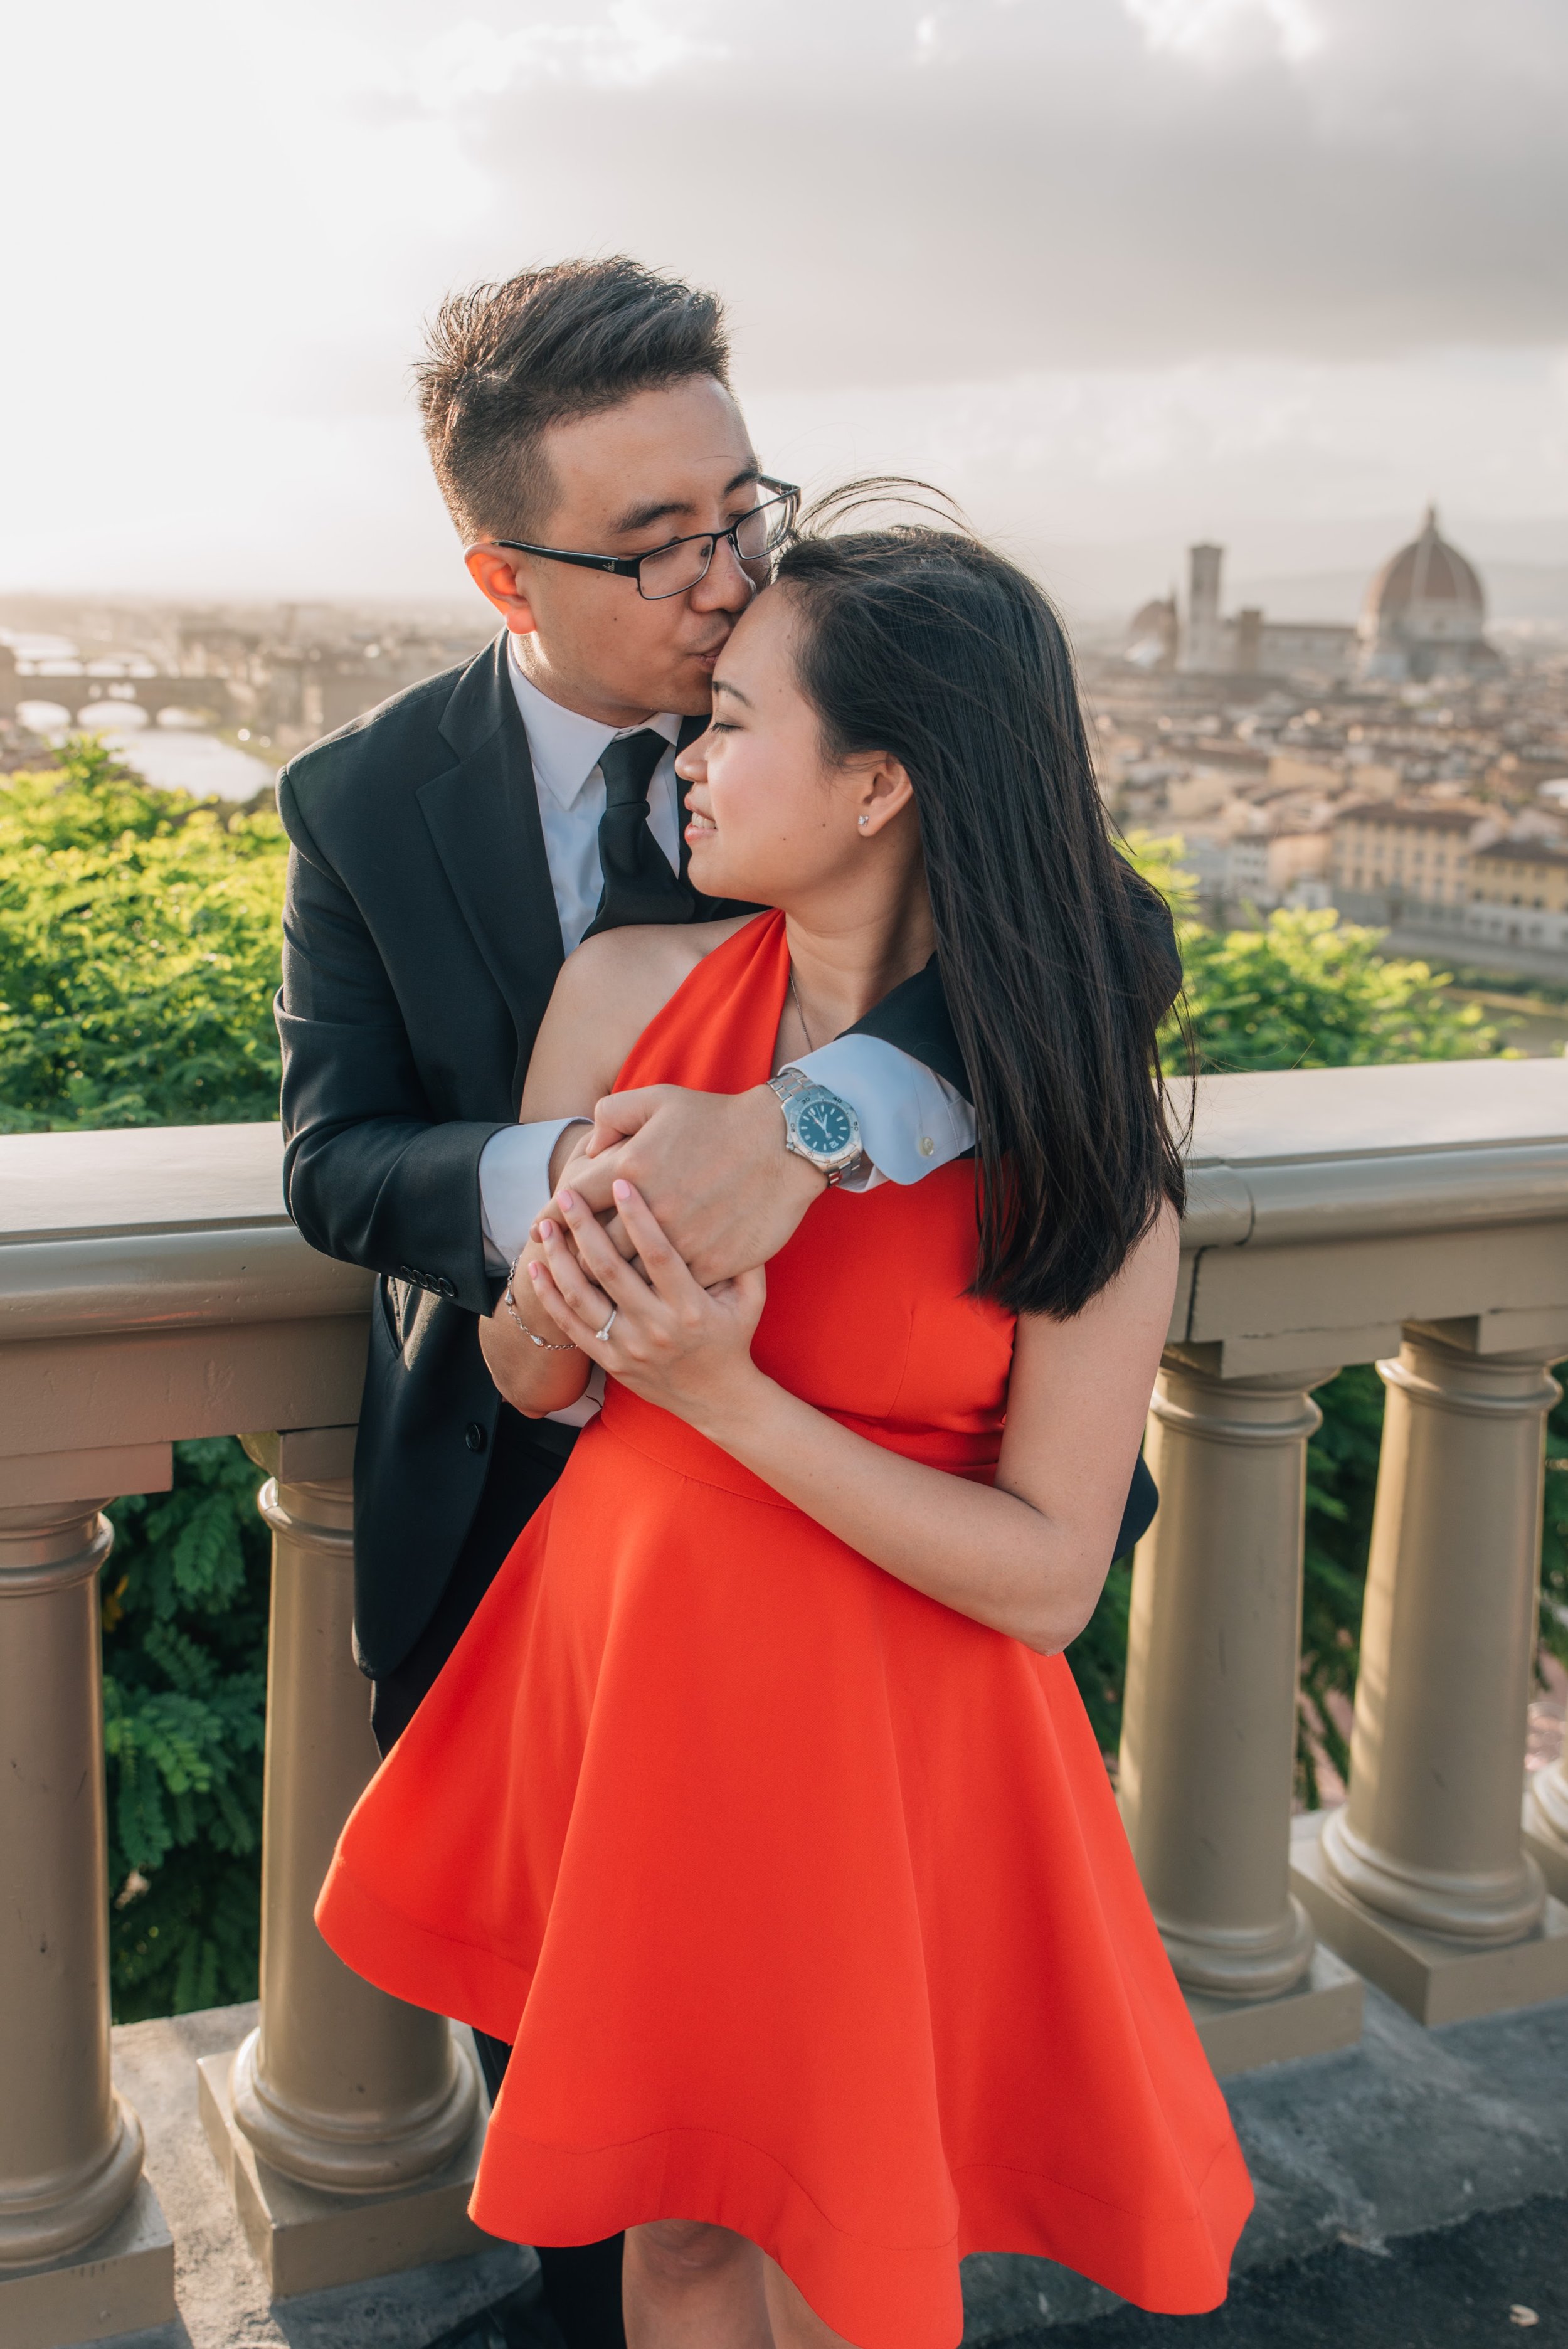 Italy Engagement Photos - Florence, Tuscany, Positano, Amalfi Coast — The Overwhelmed Bride Wedding Blog